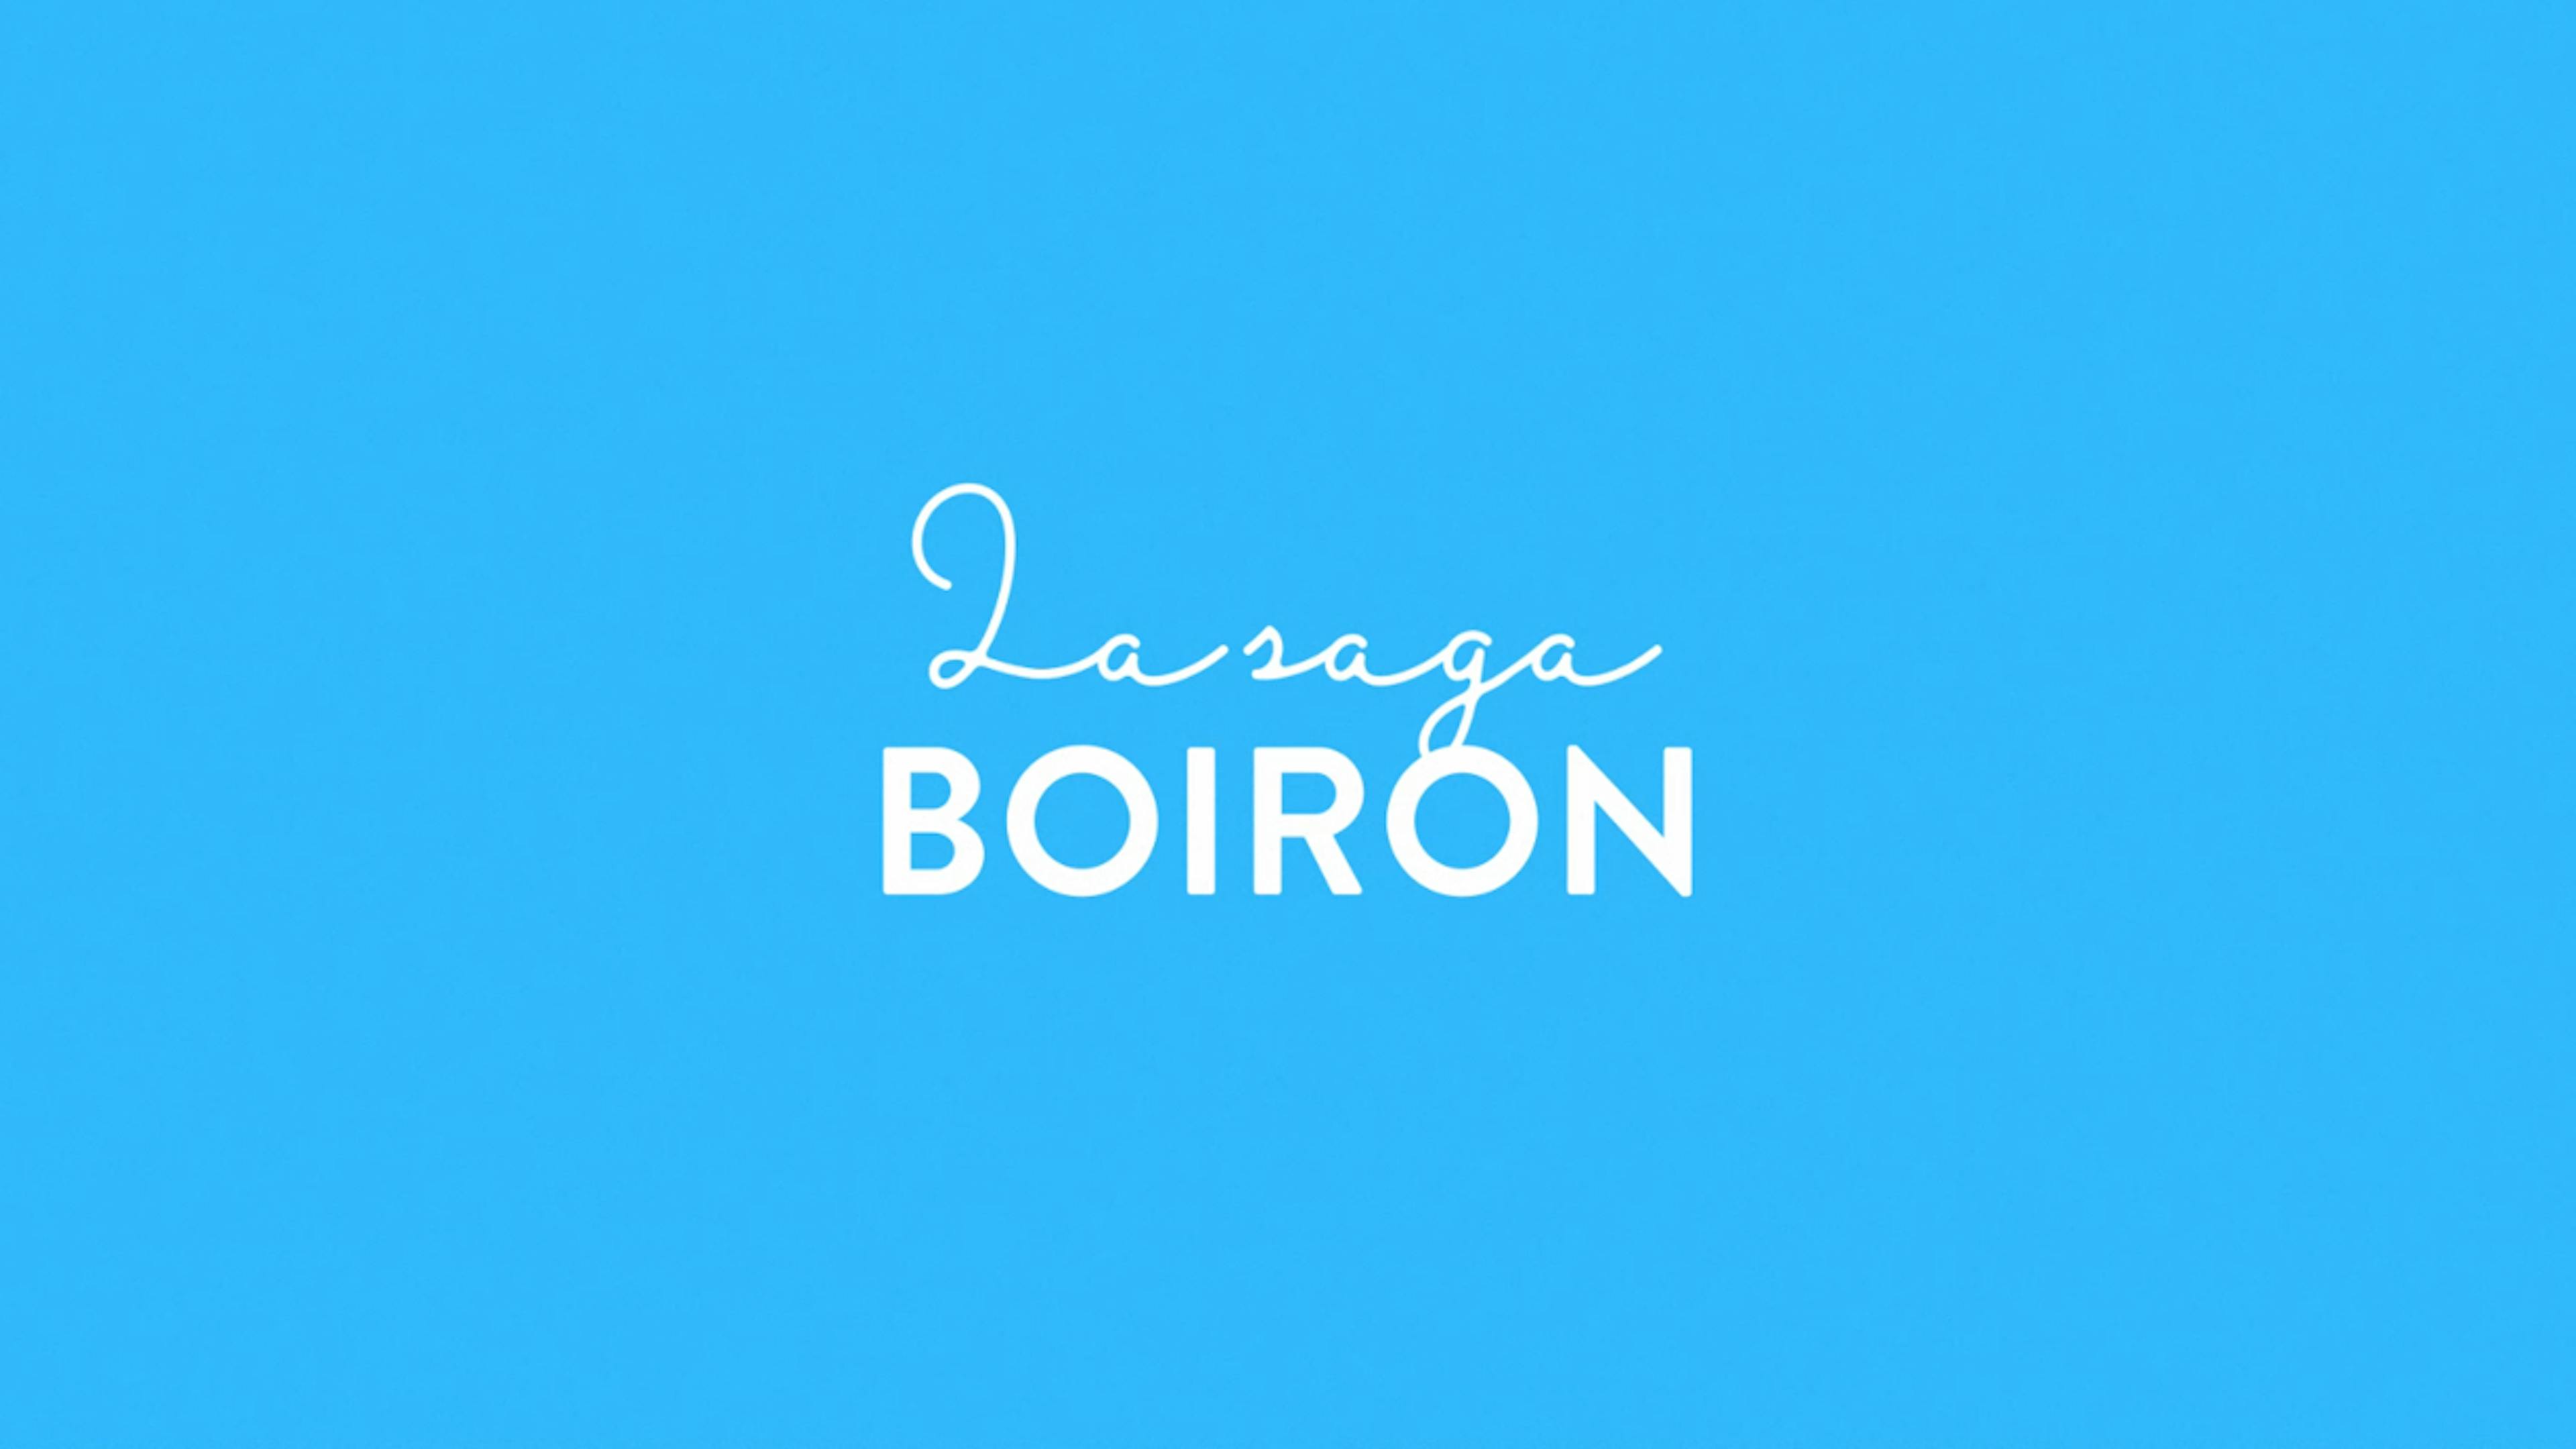 préview video saga Boiron 90 ans